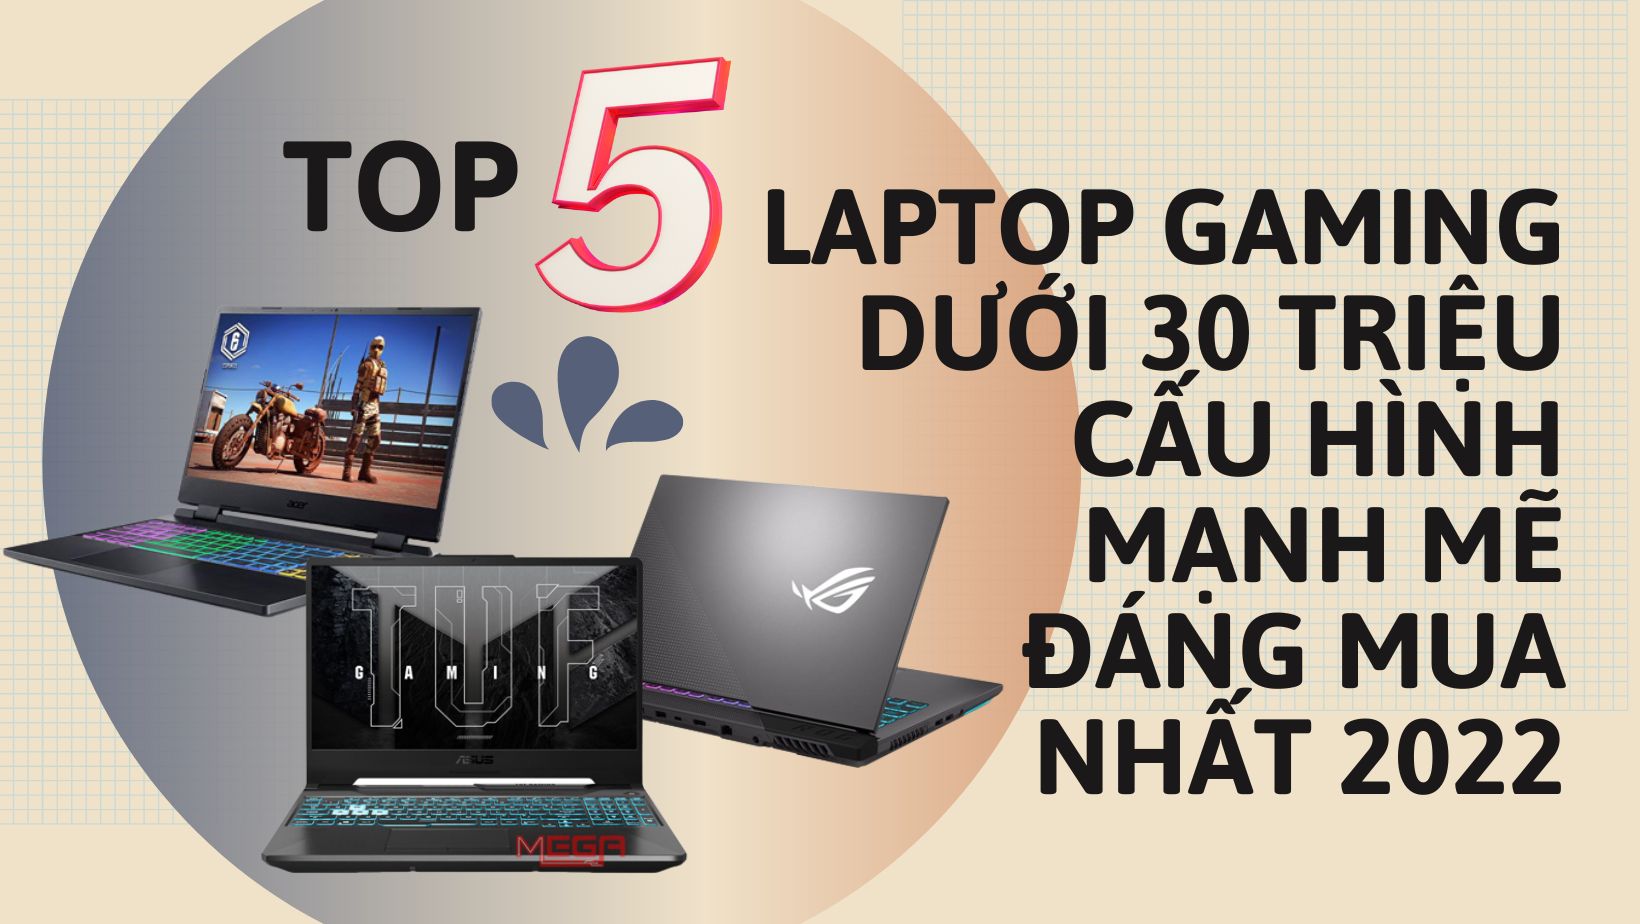 Top 5 Laptop gaming dưới 30 triệu hiệu năng mạnh mẽ, đáng mua nhất 2023